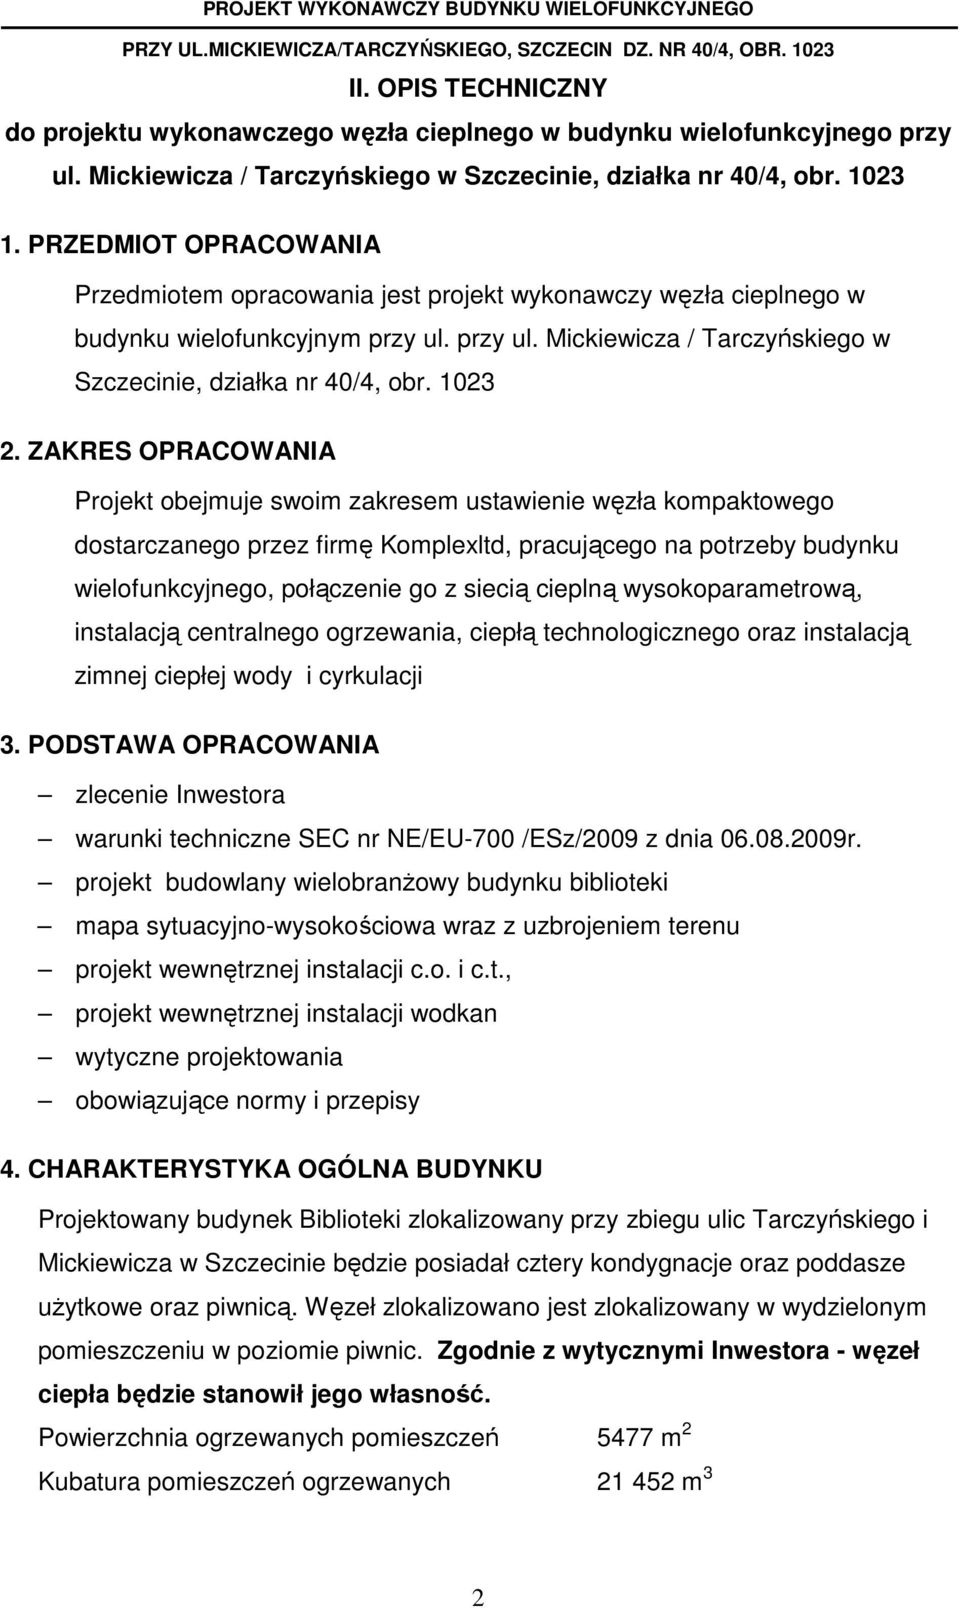 PRZEDMIOT OPRACOWANIA Przedmiotem opracowania jest projekt wykonawczy węzła cieplnego w budynku wielofunkcyjnym przy ul. przy ul. Mickiewicza / Tarczyńskiego w Szczecinie, działka nr 40/4, obr.